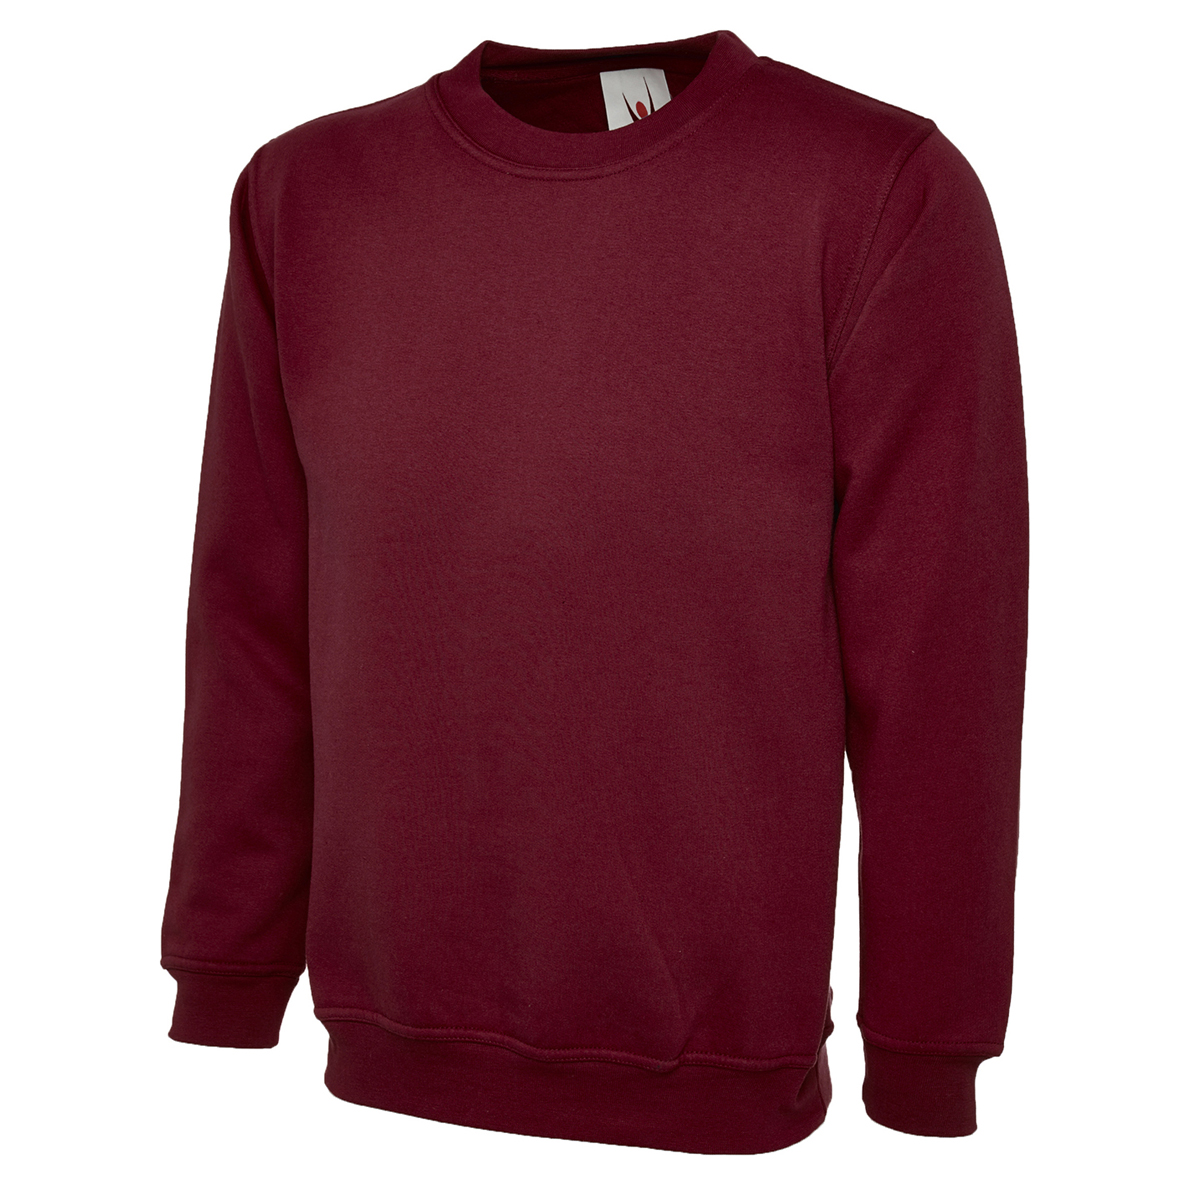 Uc203 300gsm classic sweatshirt - maroon - medium